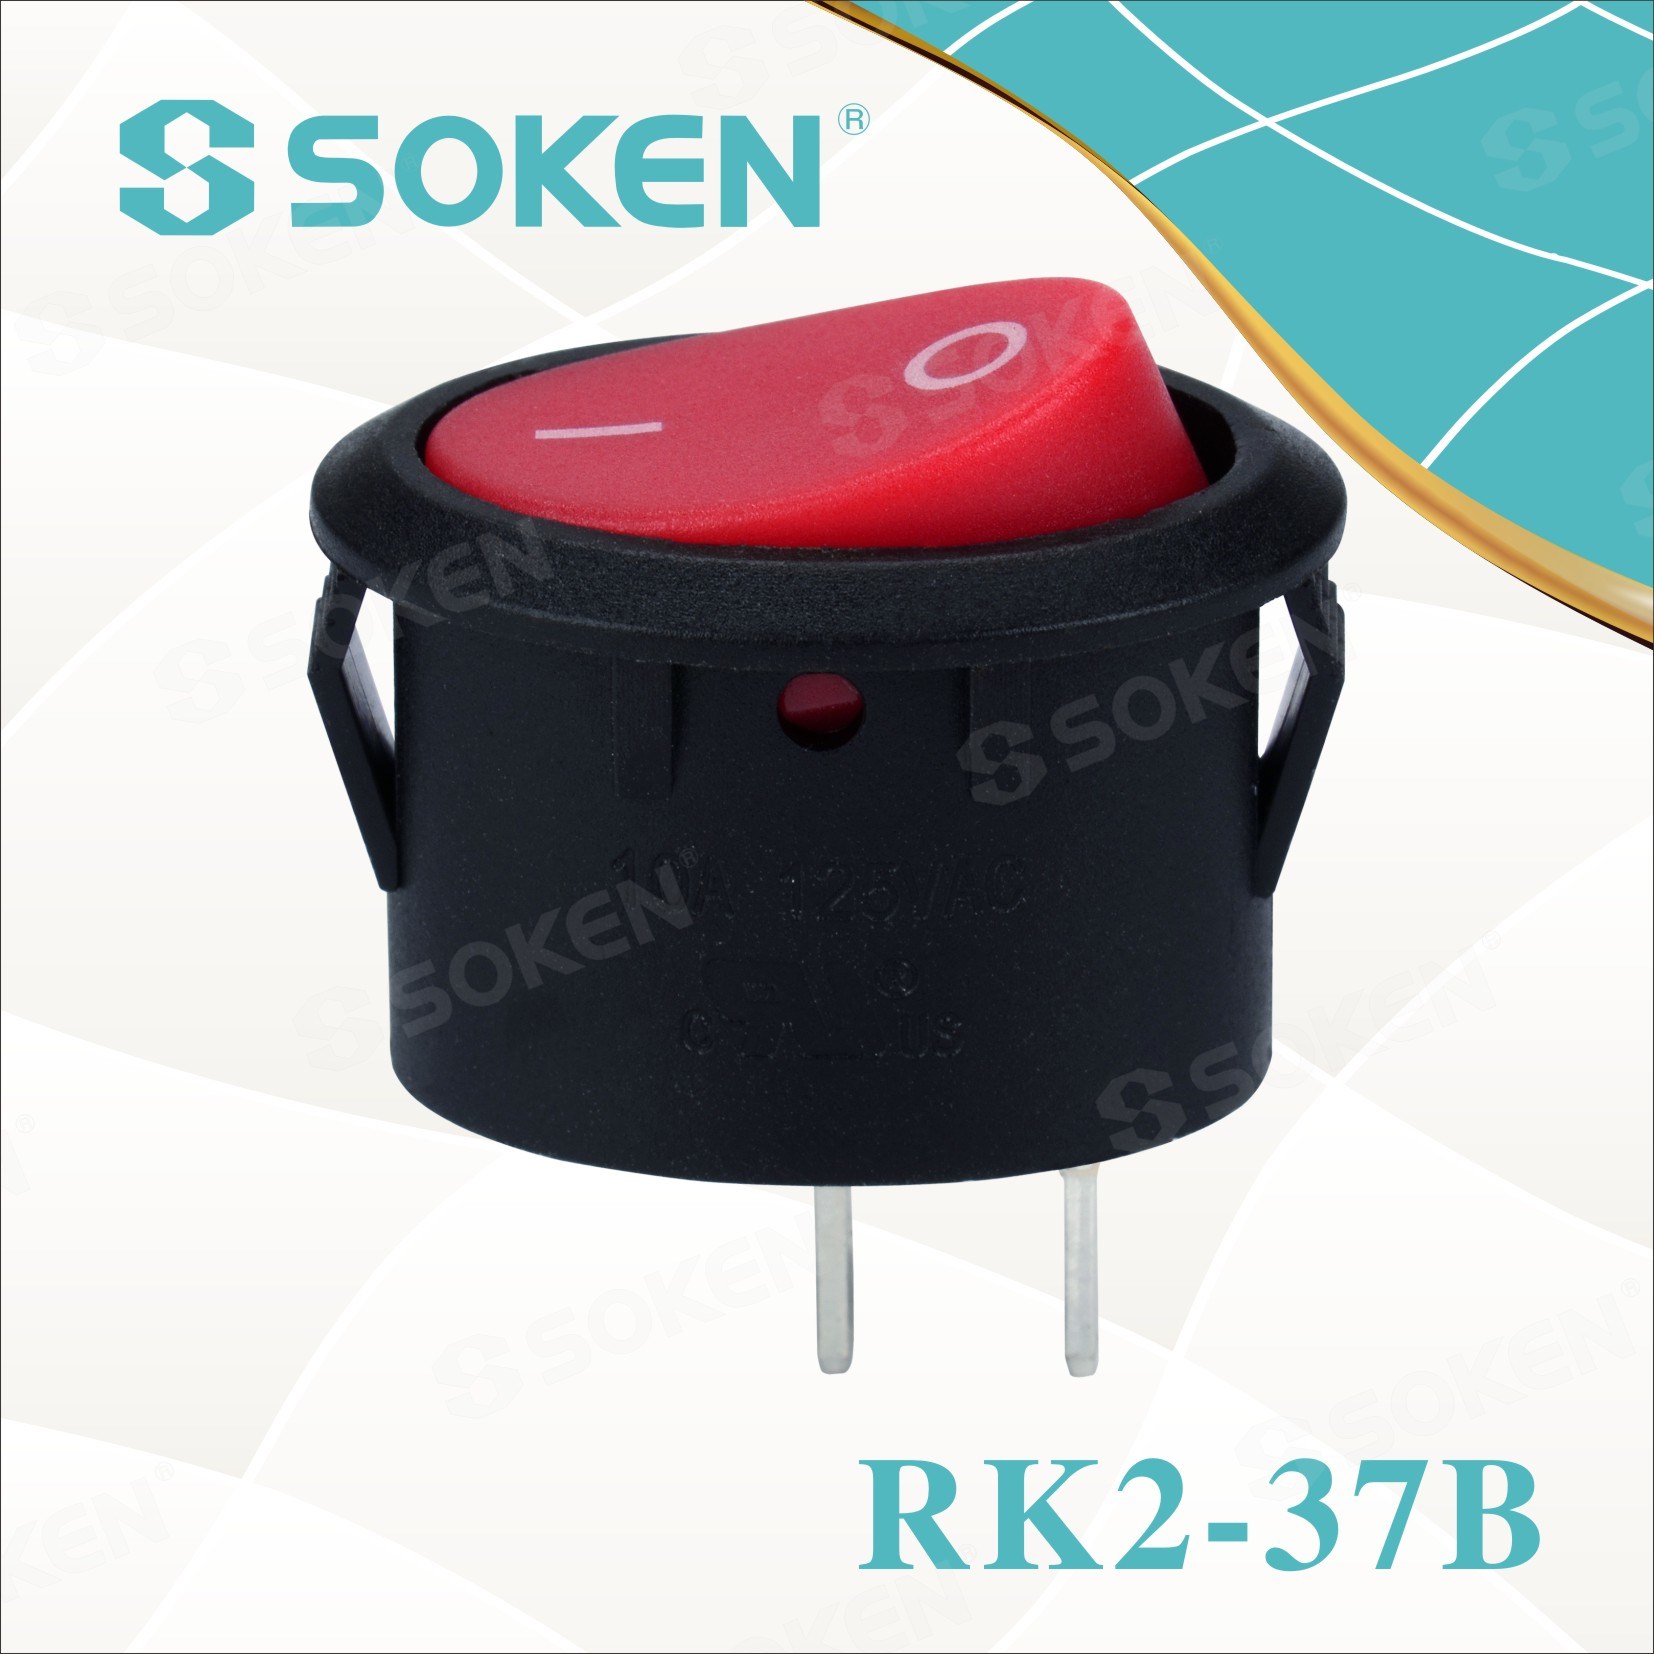 Oval-Rocker-Switch-Rk2-37b2412